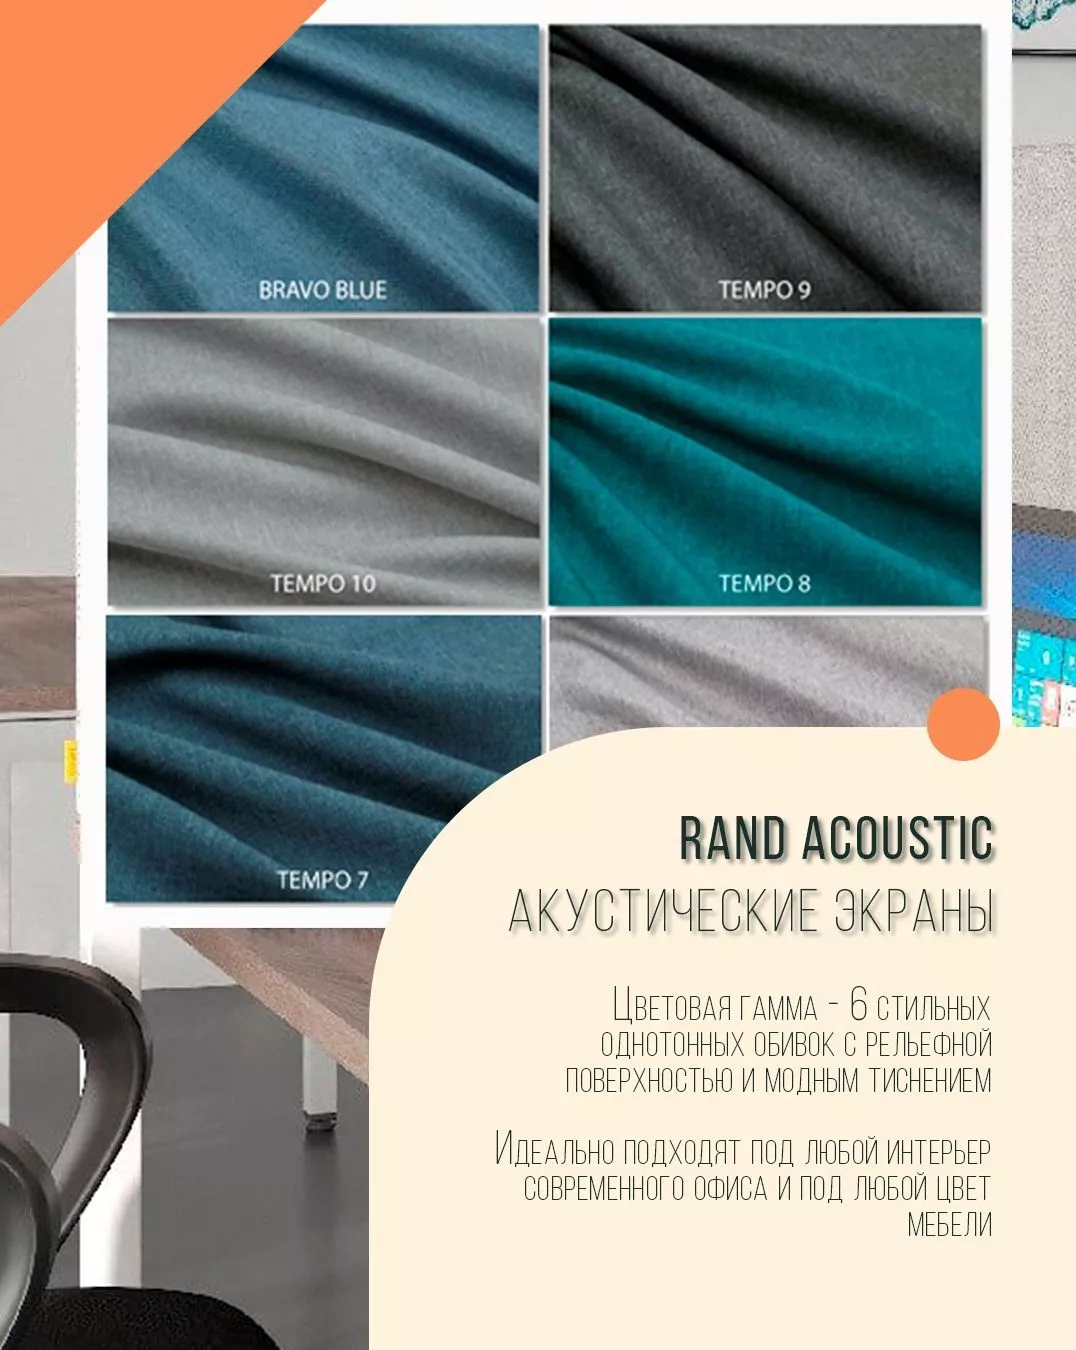 Акустические экраны Rand Acoustic Skyland